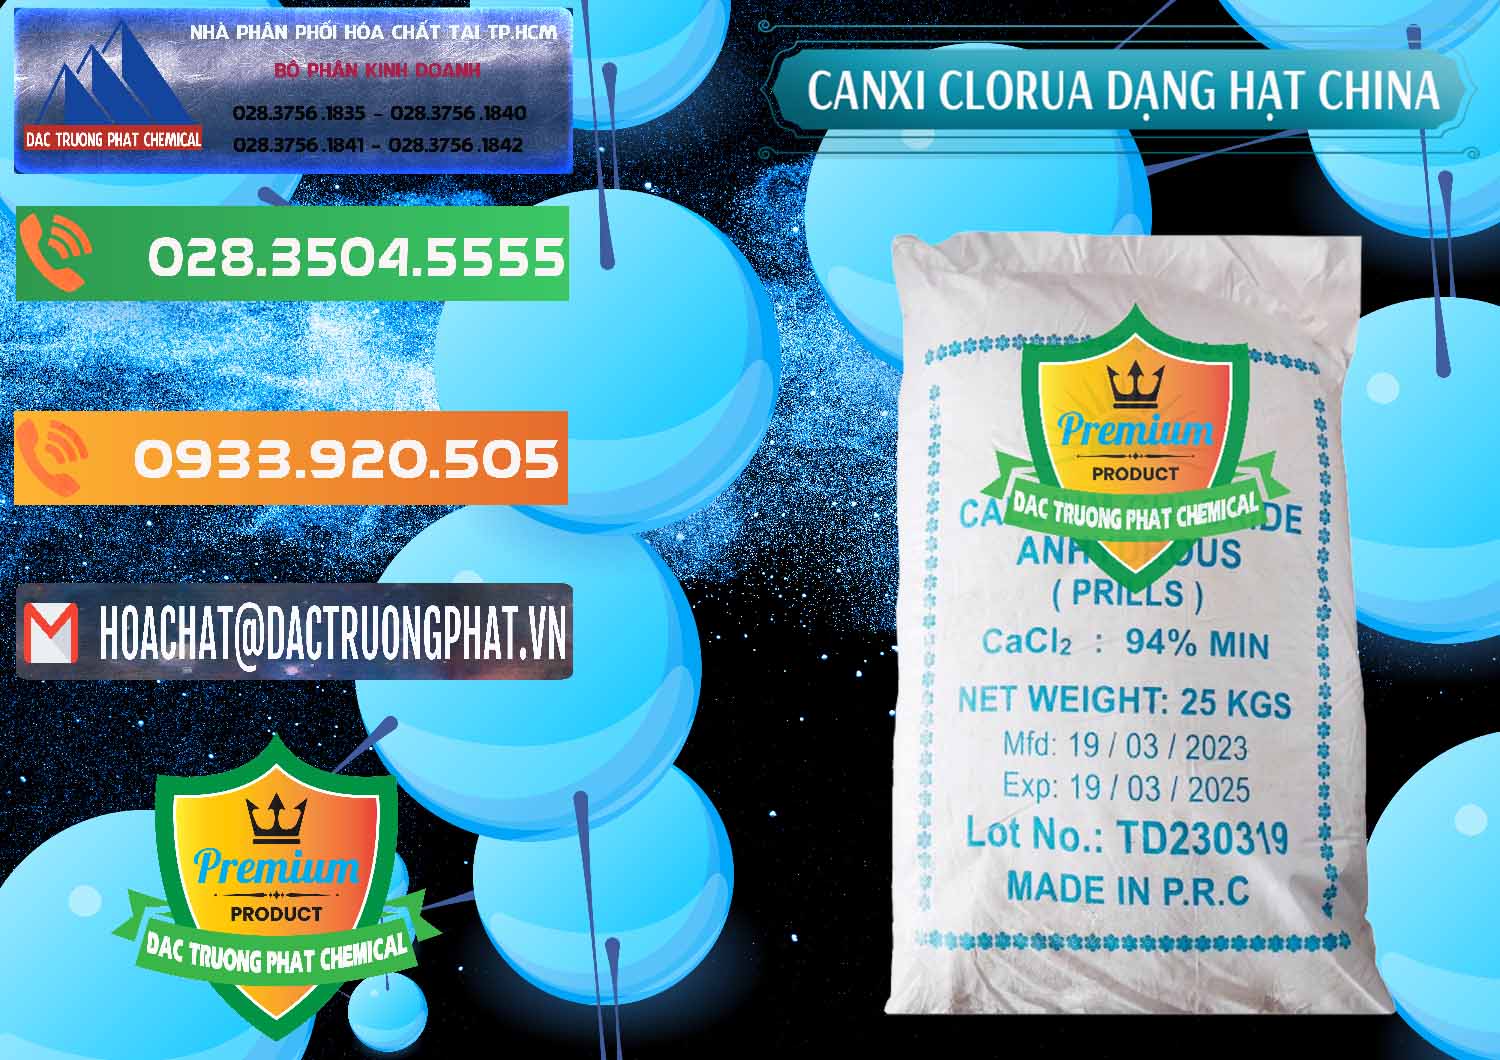 Cung cấp ( bán ) CaCl2 – Canxi Clorua 94% Dạng Hạt Trung Quốc China - 0373 - Bán & phân phối hóa chất tại TP.HCM - hoachatxulynuoc.com.vn